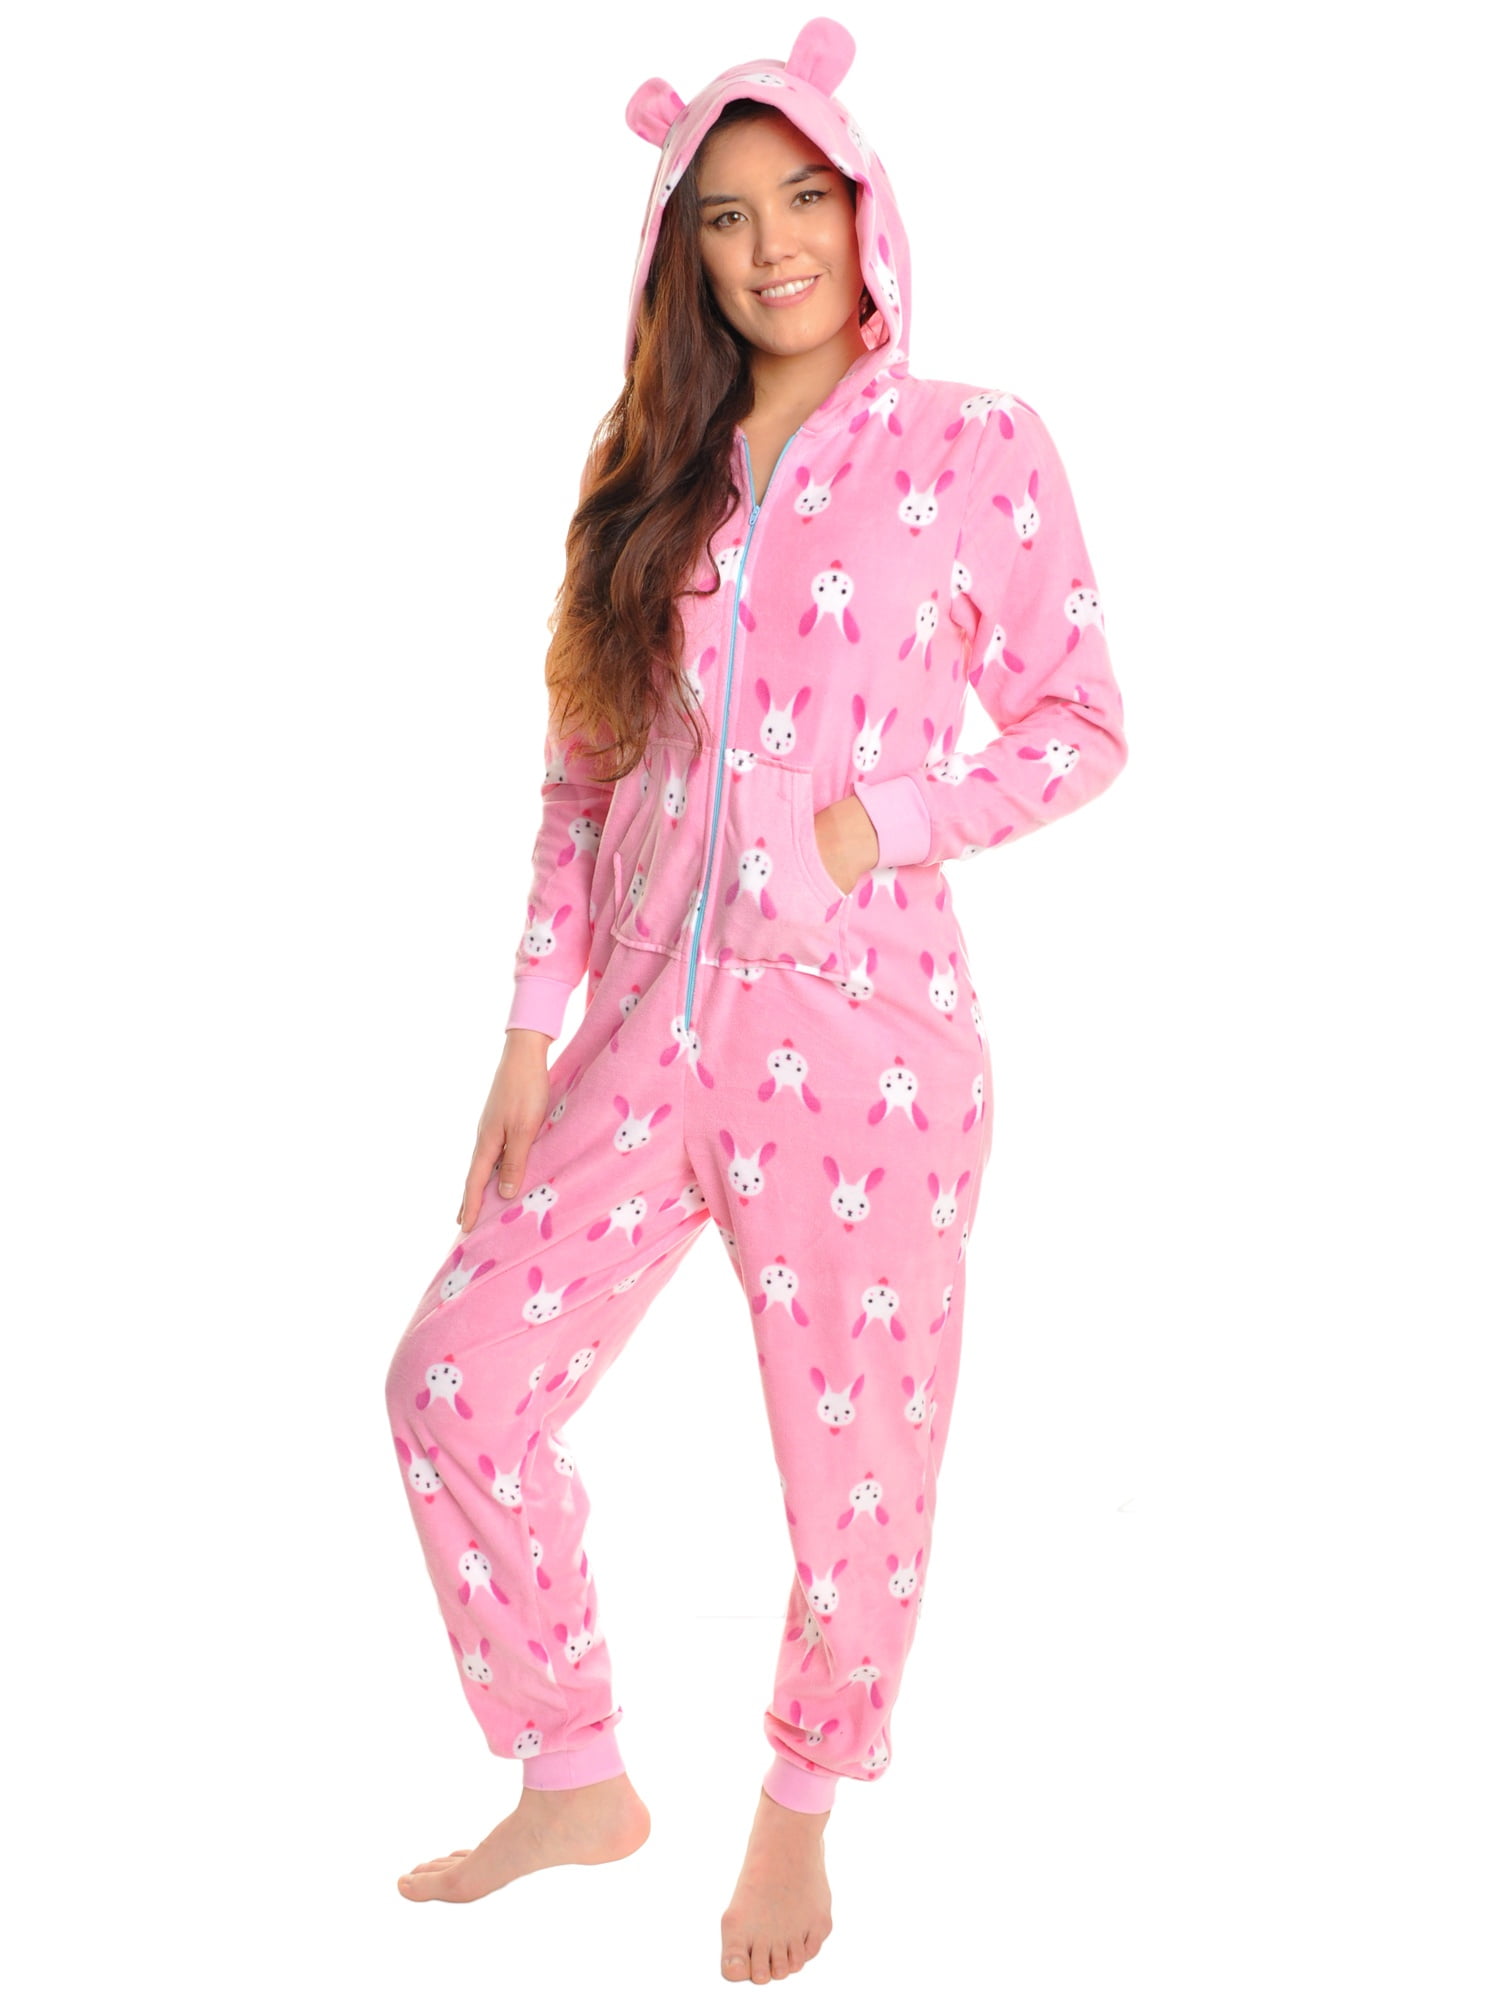 Angelina - Angelina Adults' Fleece Novelty One-Piece Hooded Pajamas (1 ...